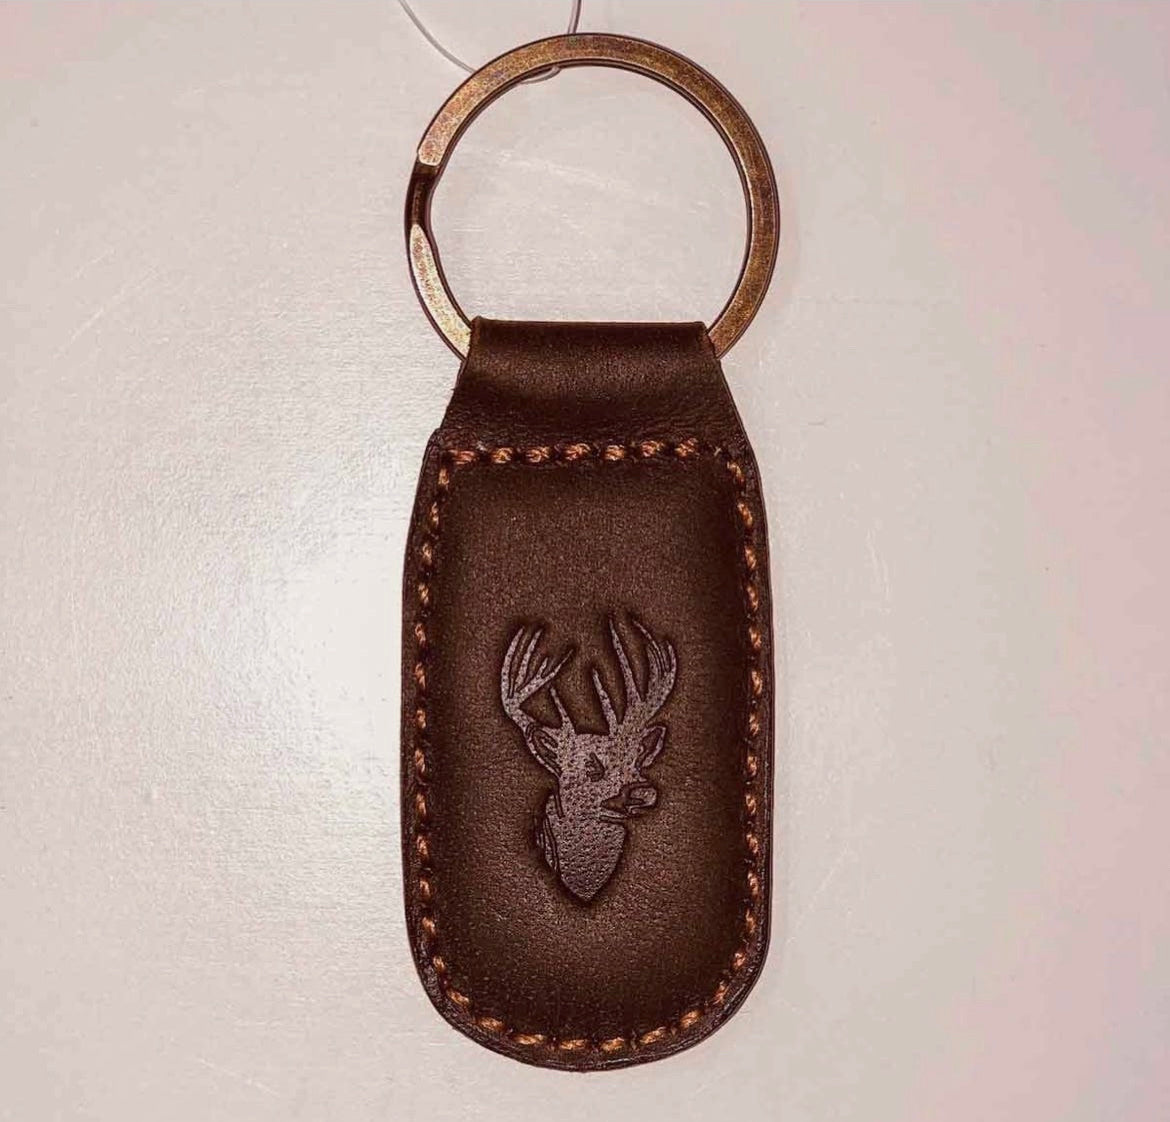 The Royal Standard Deer Leather Embossed Keychain-Dark Brown